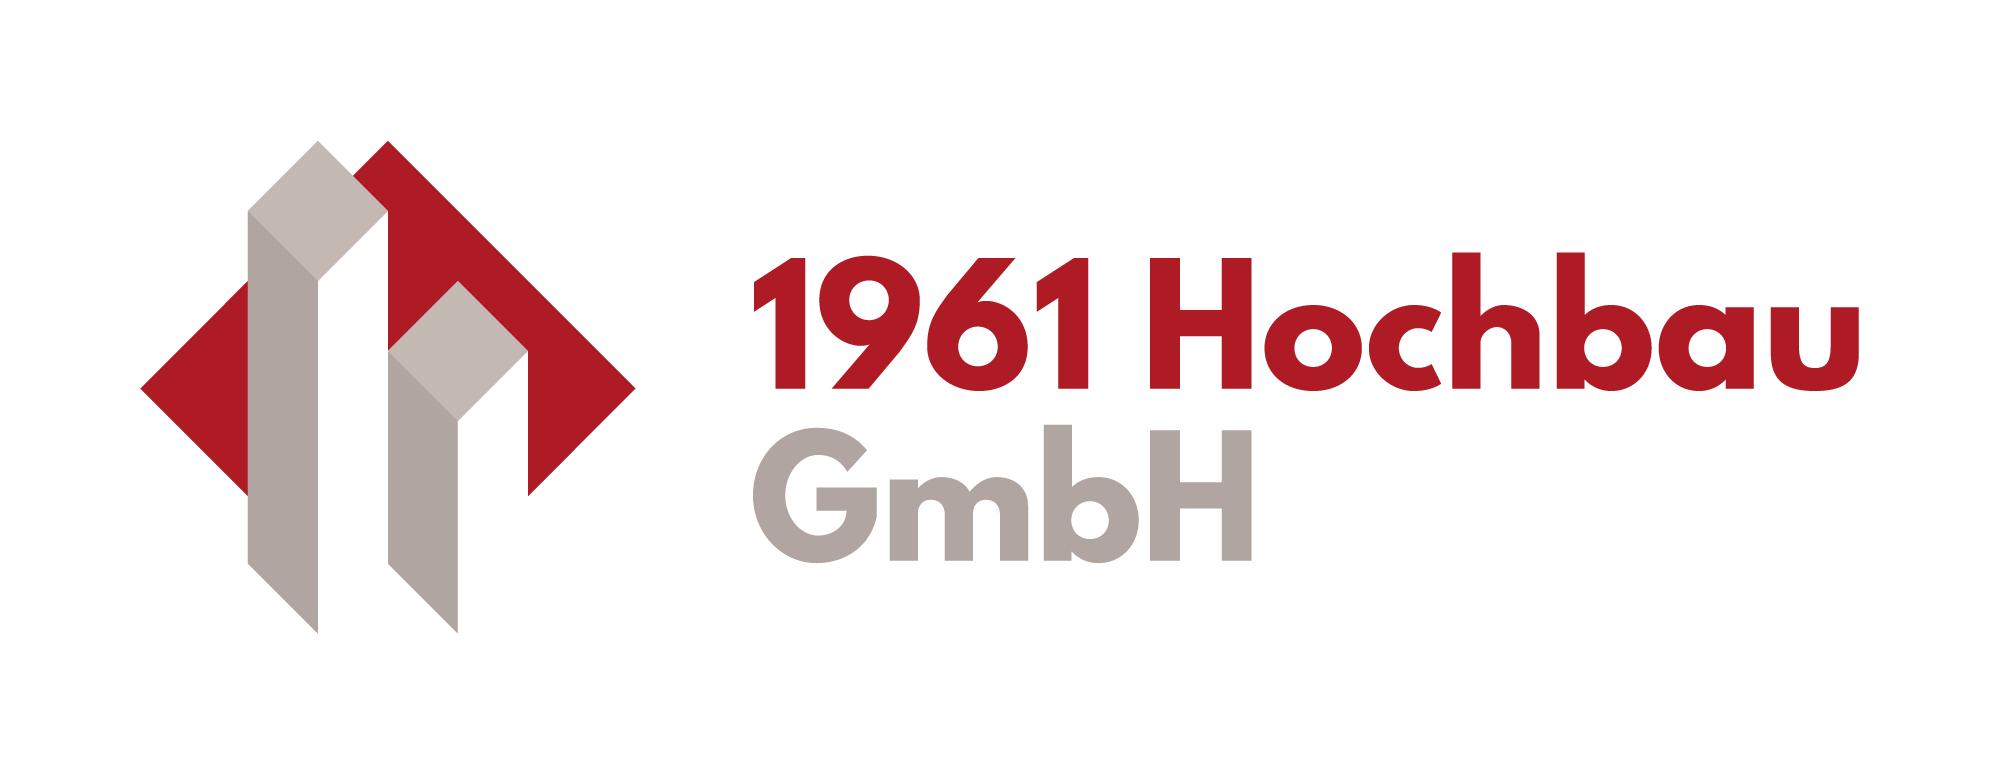 1961 Hochbau GmbH